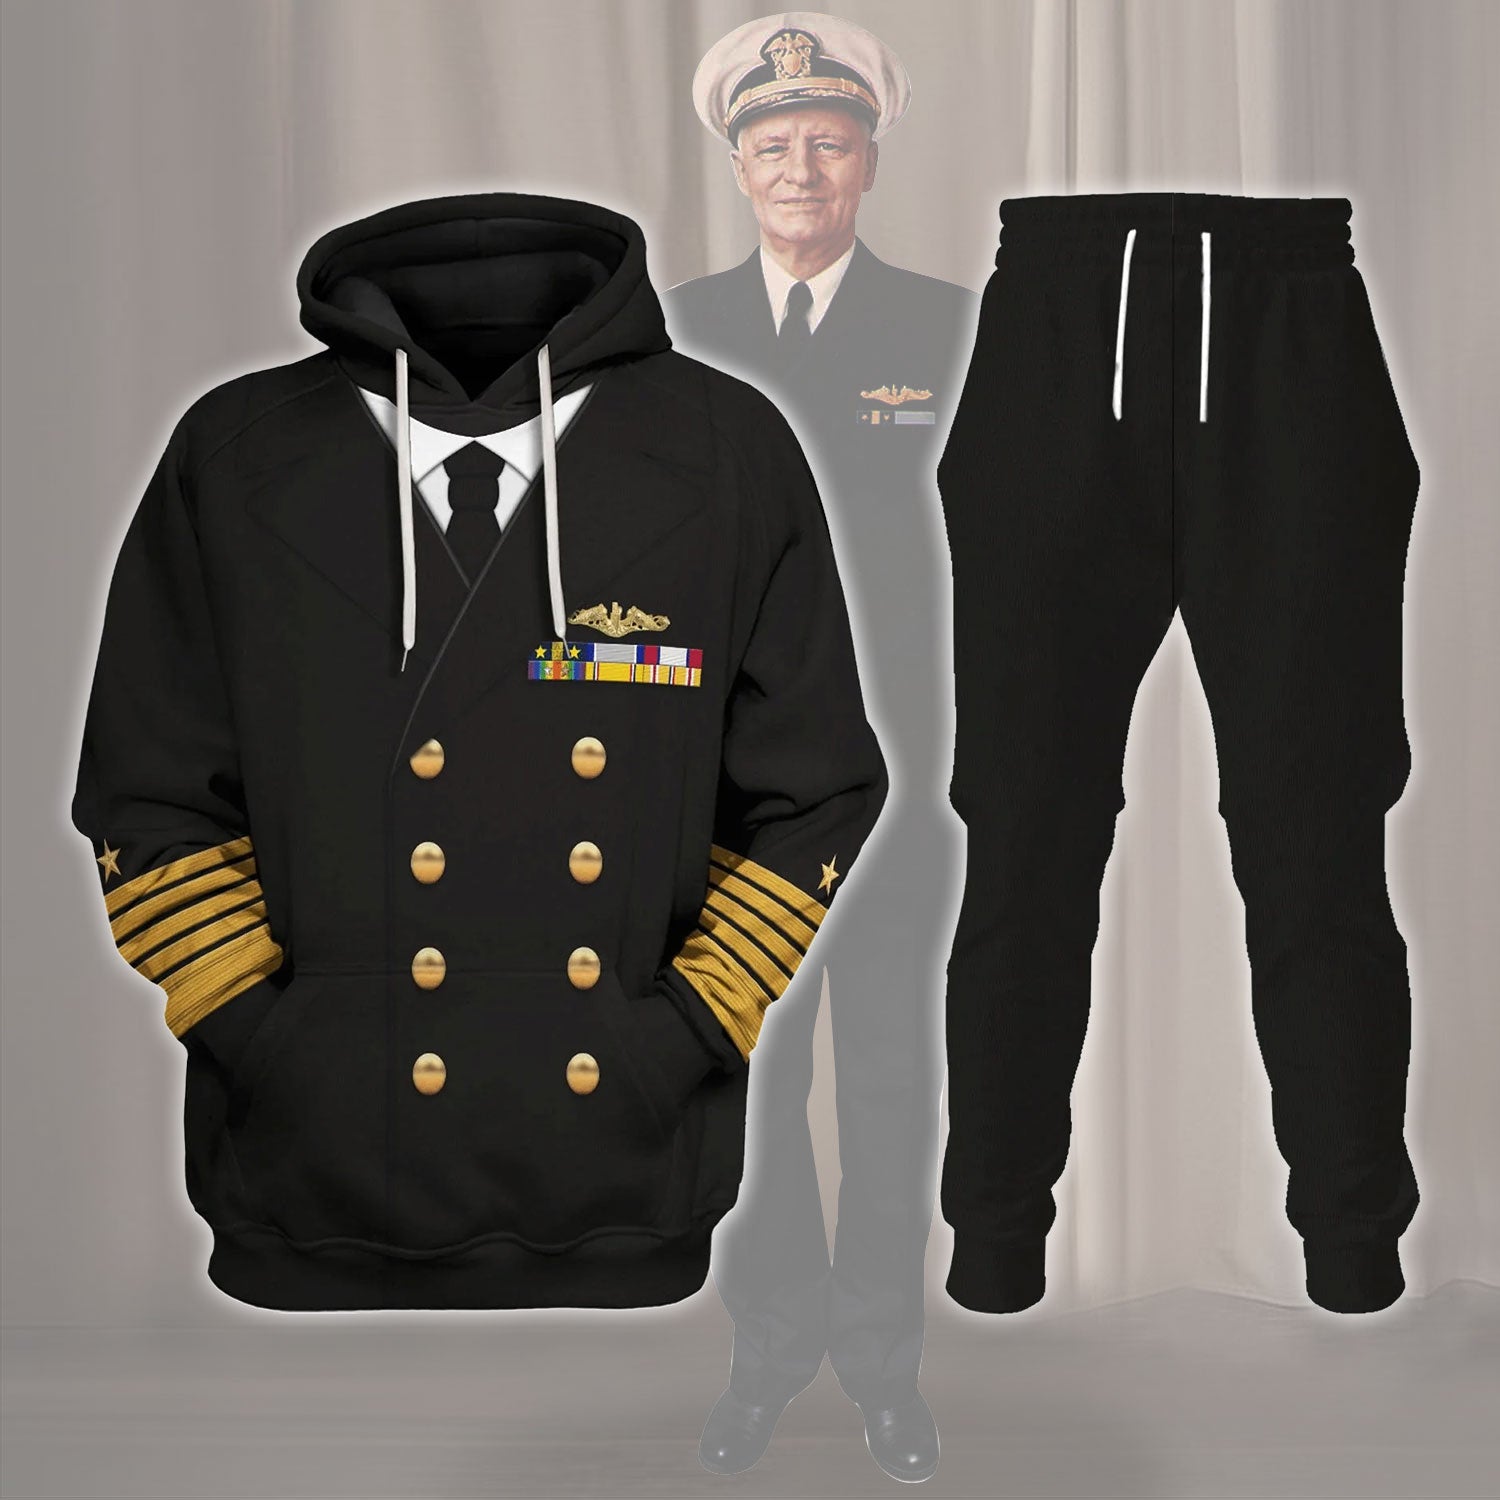 Gearhomie US Navy Fleet Admiral Chester W. Nimitz Costume track suit 